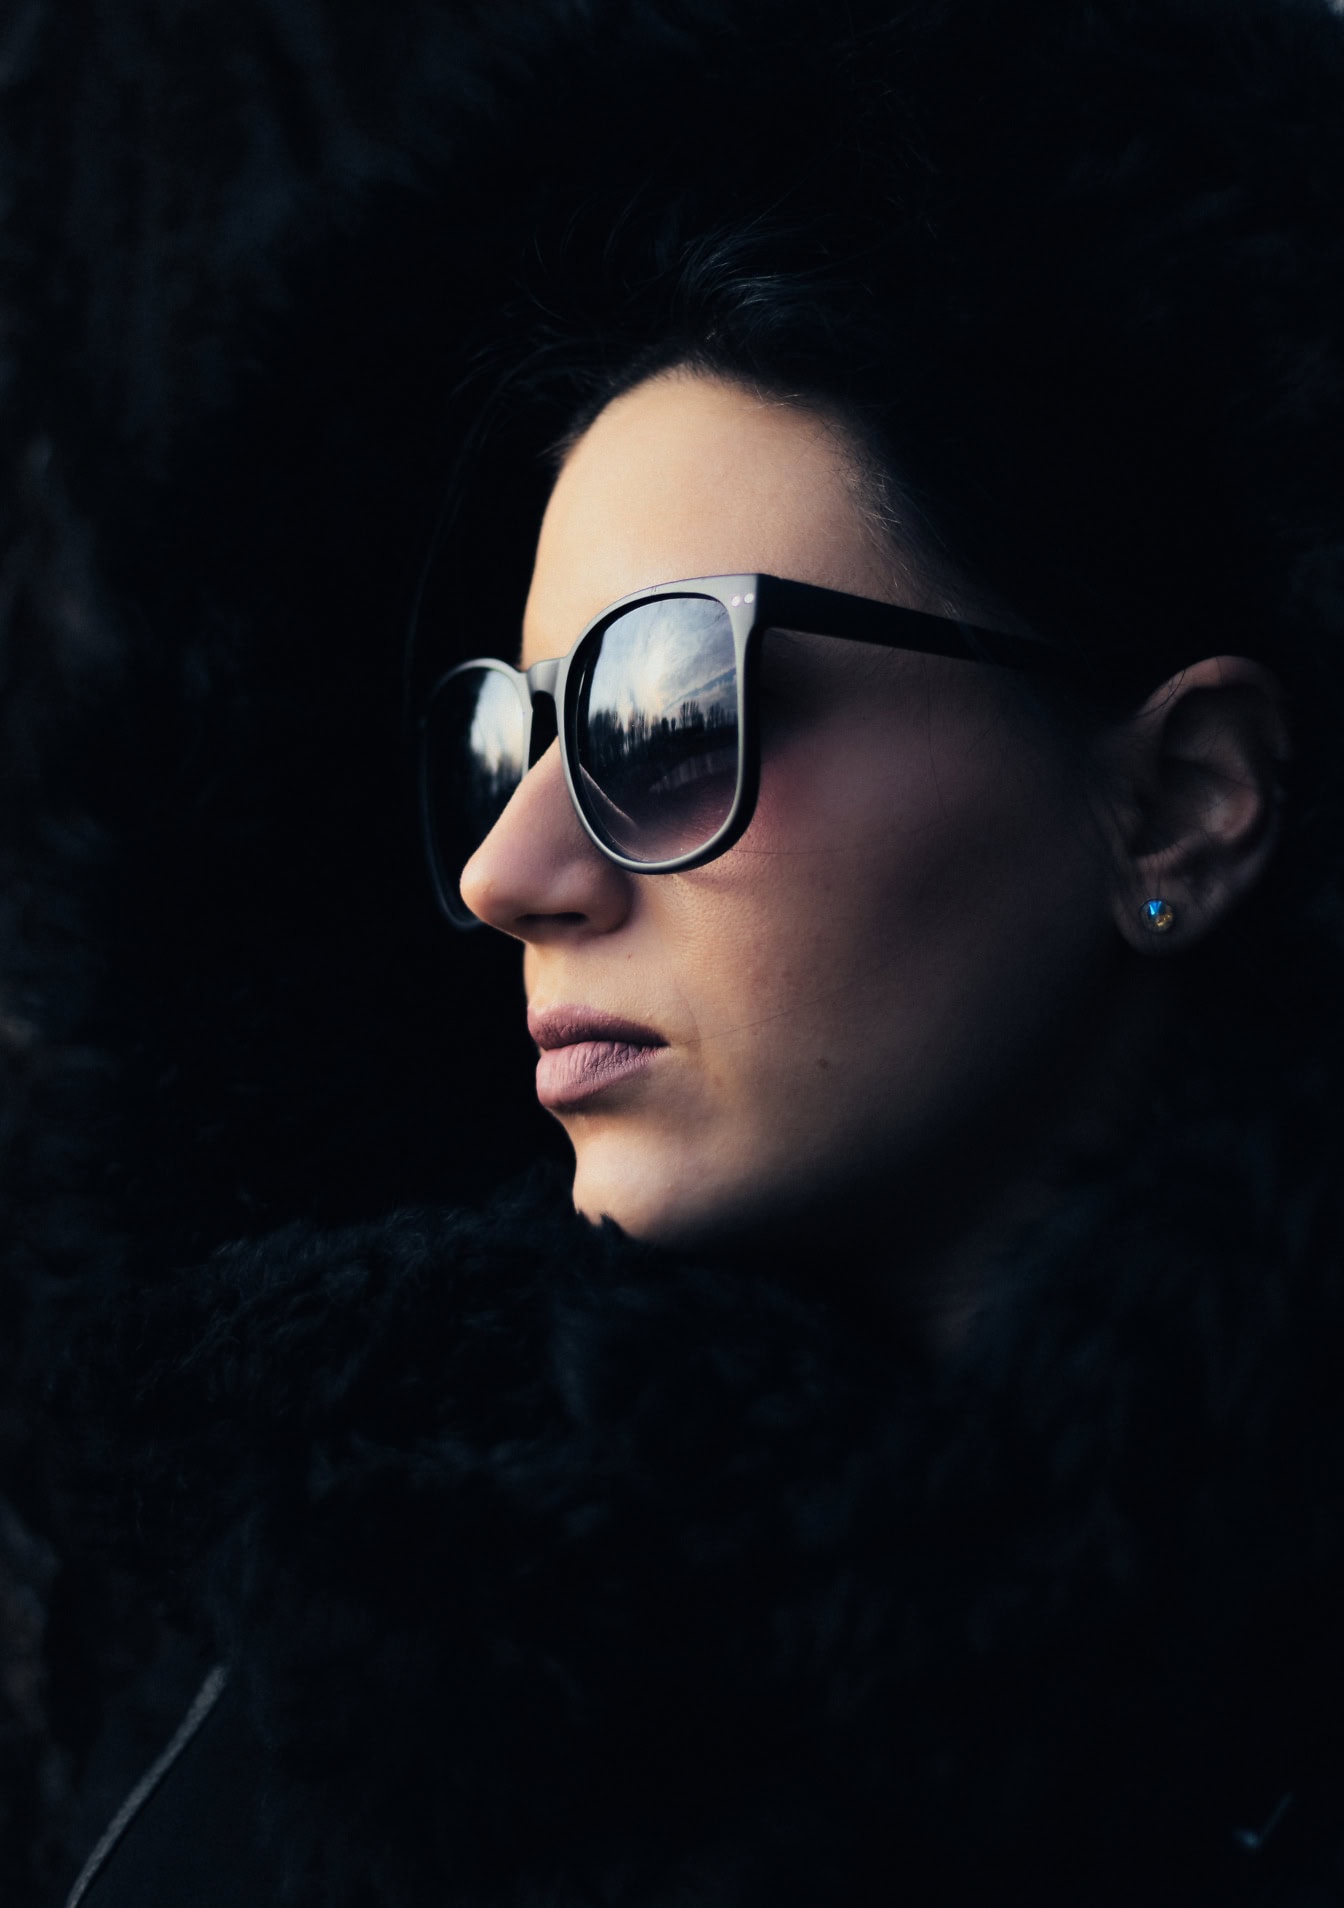 Portræt af et ansigt af en smuk kvinde iført solbriller og en sort pelsfrakke i meget mørk skygge